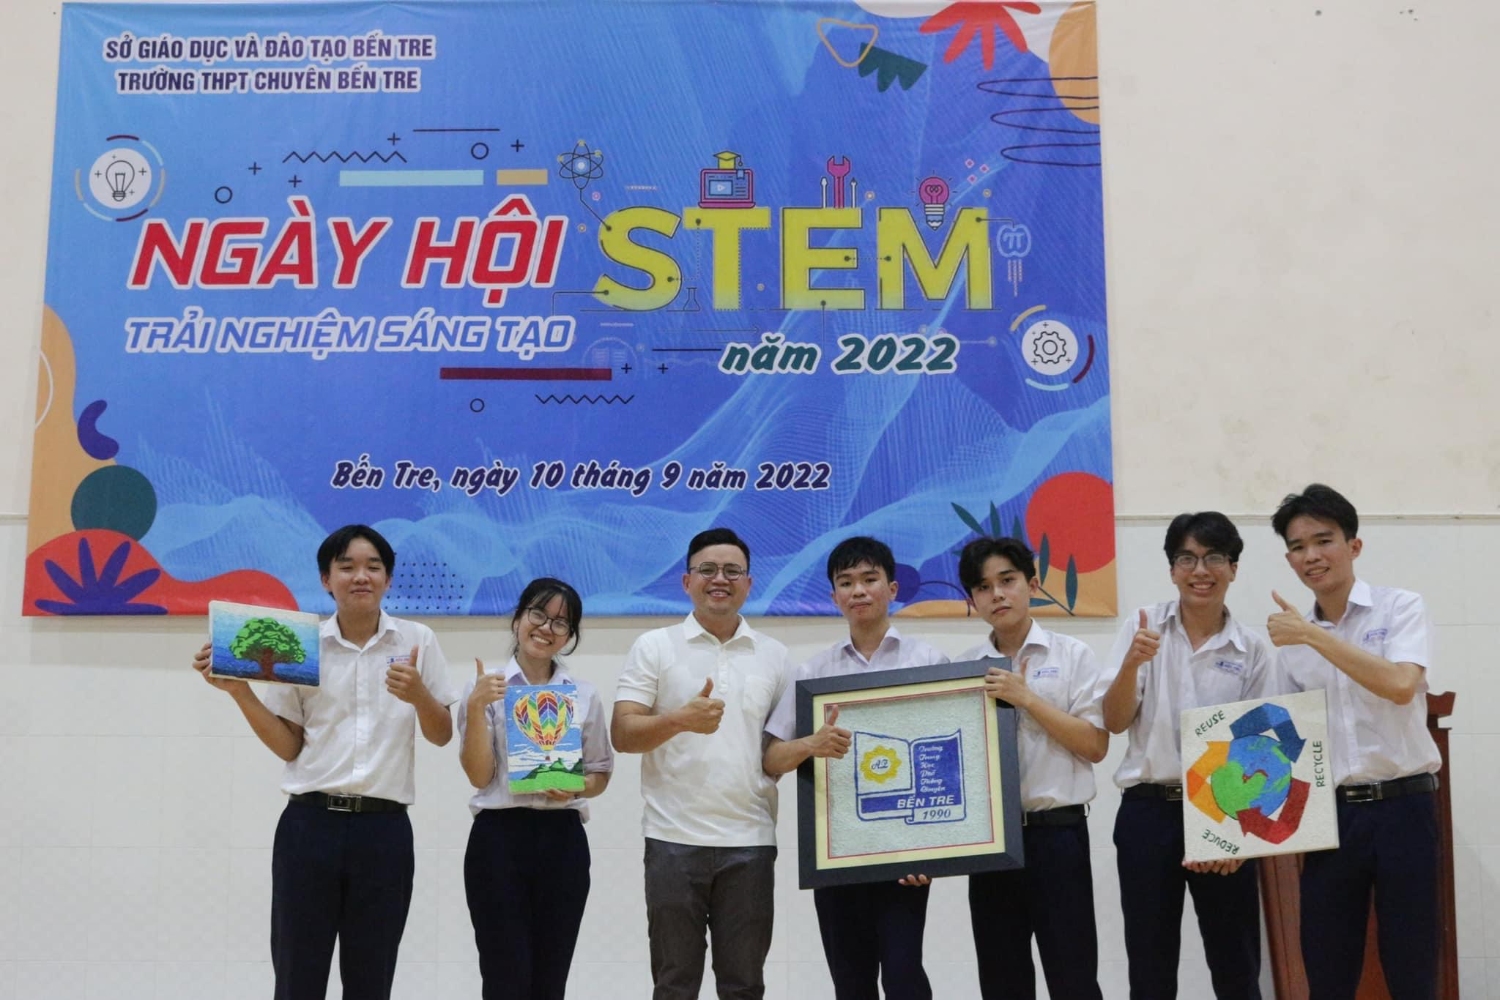 Ngày hội STEM - TRẢI NGHIỆM SÁNG TẠO trường THPT Chuyên Bến Tre năm 2022